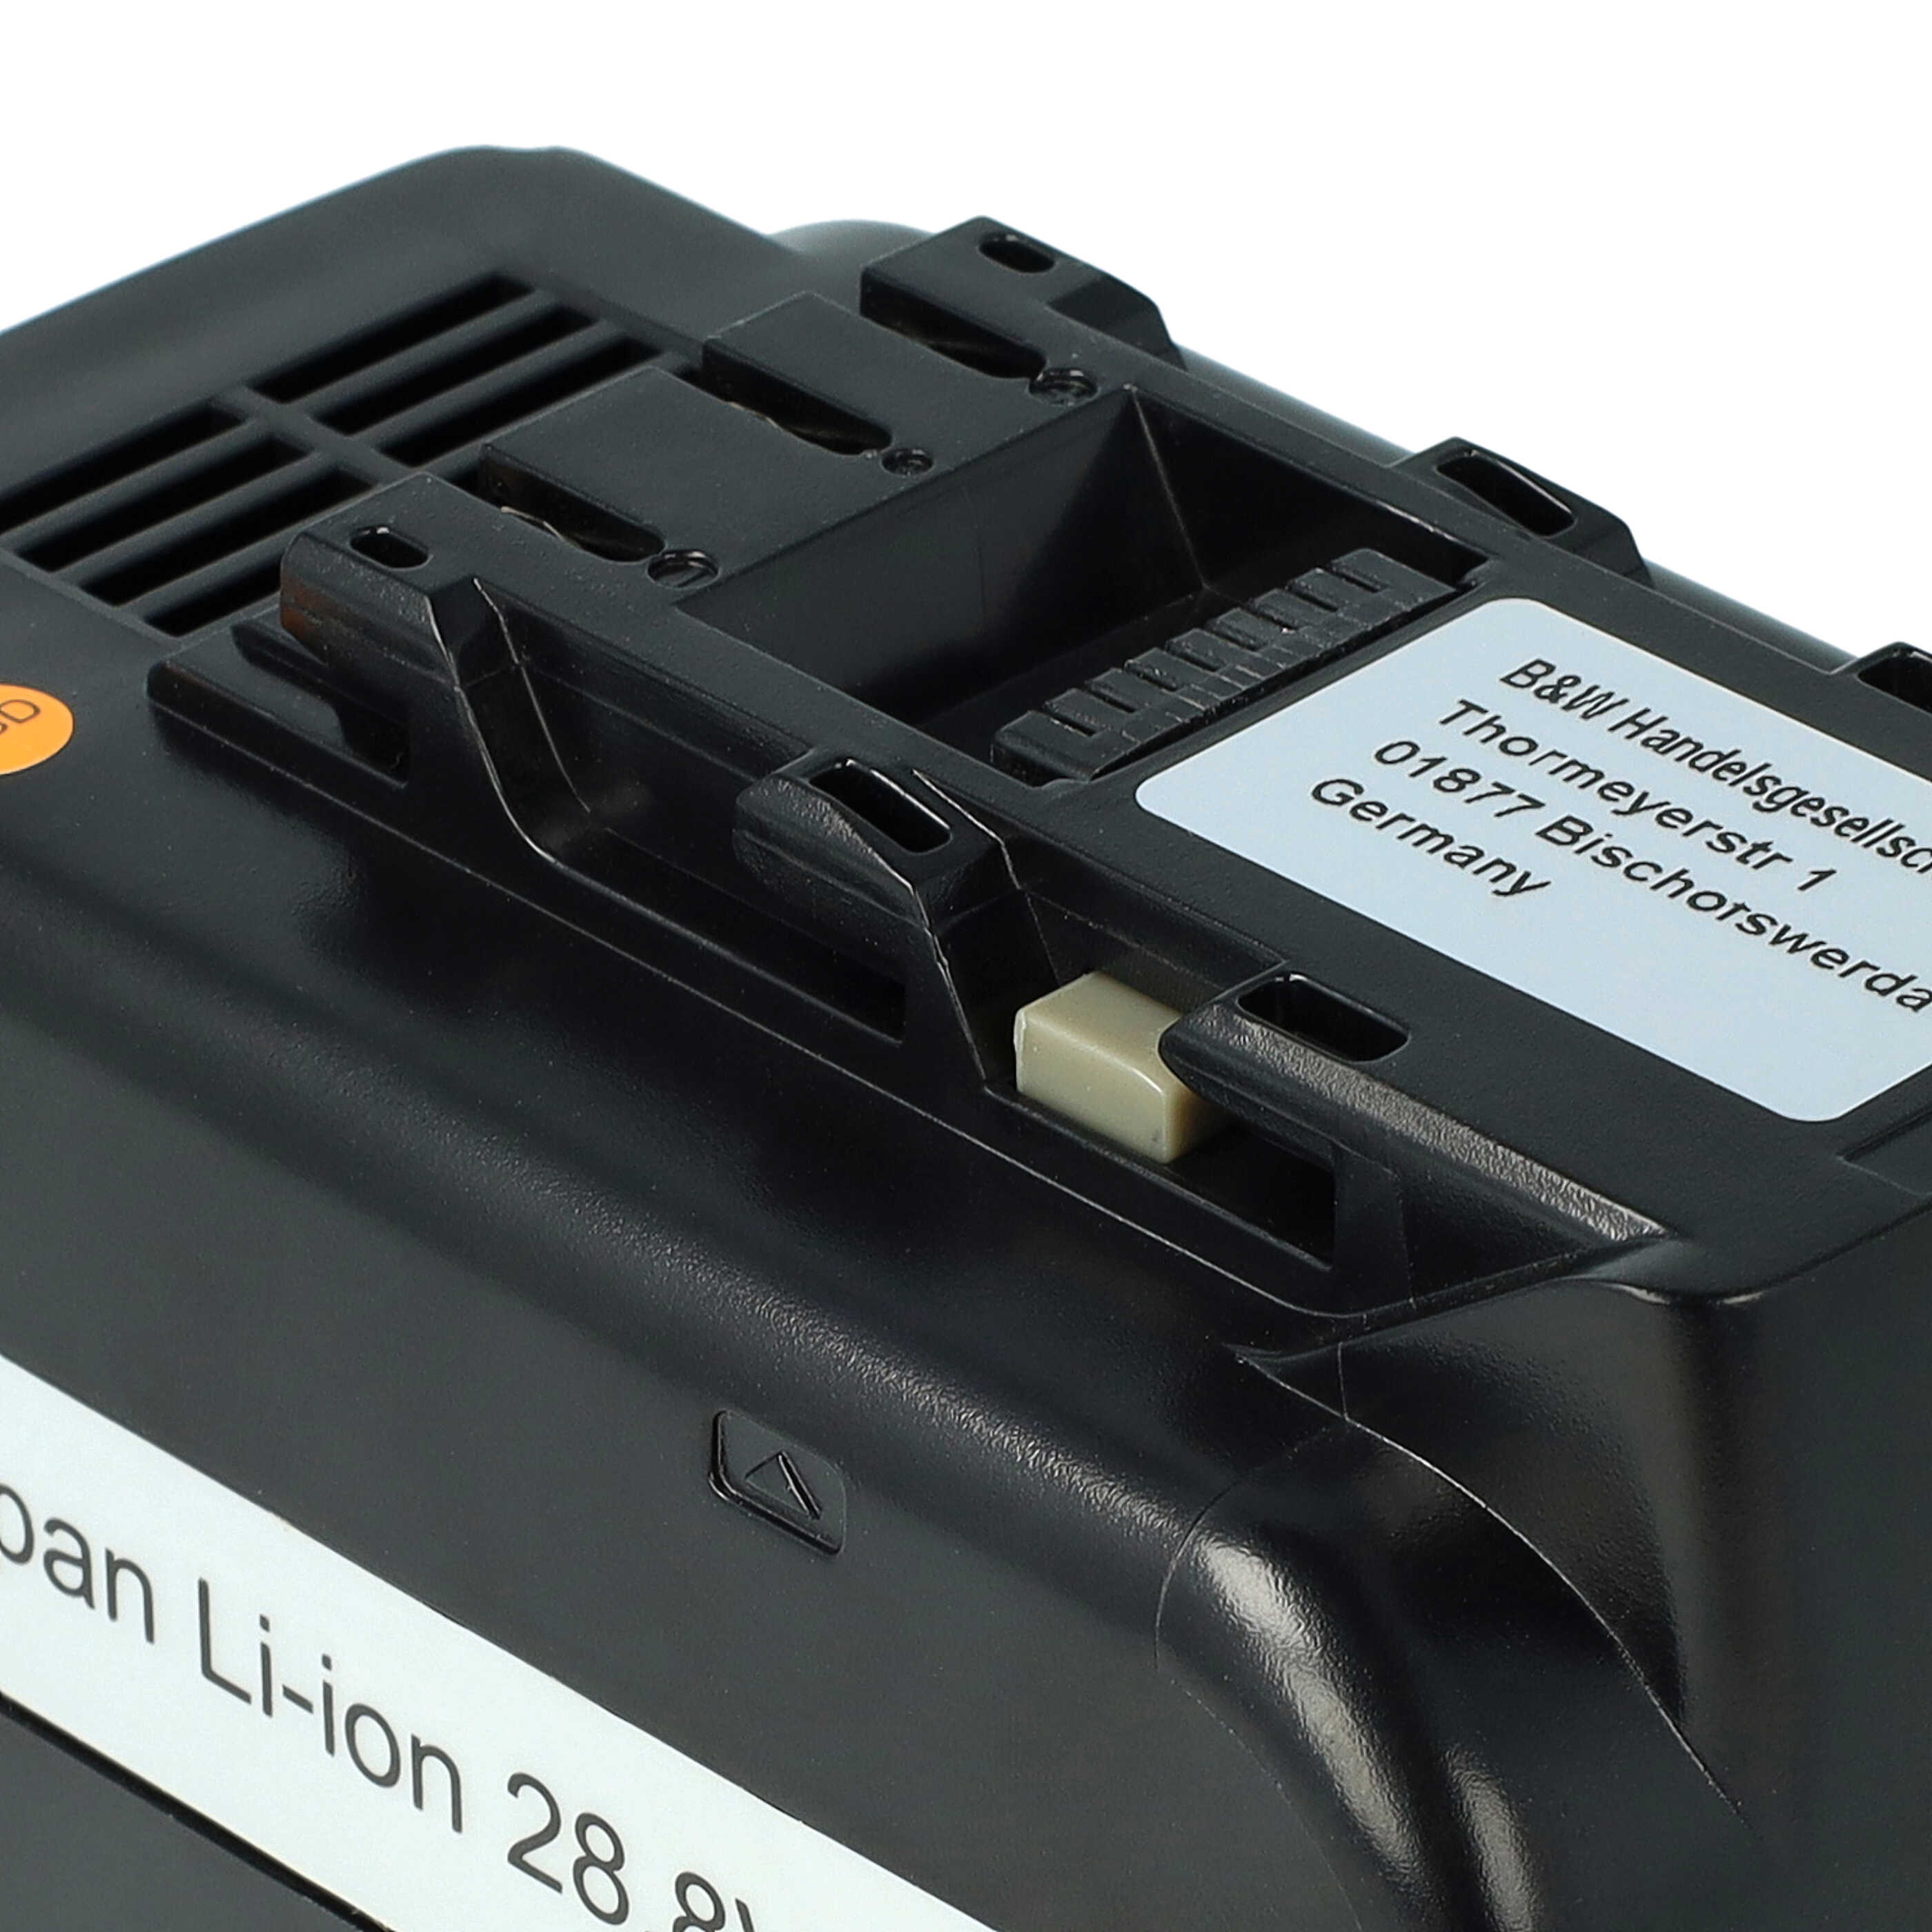 Batterie remplace Panasonic EZ9L80, EY9L80B, EY9L80 pour outil électrique - 5000 mAh, 28,8 V, Li-ion